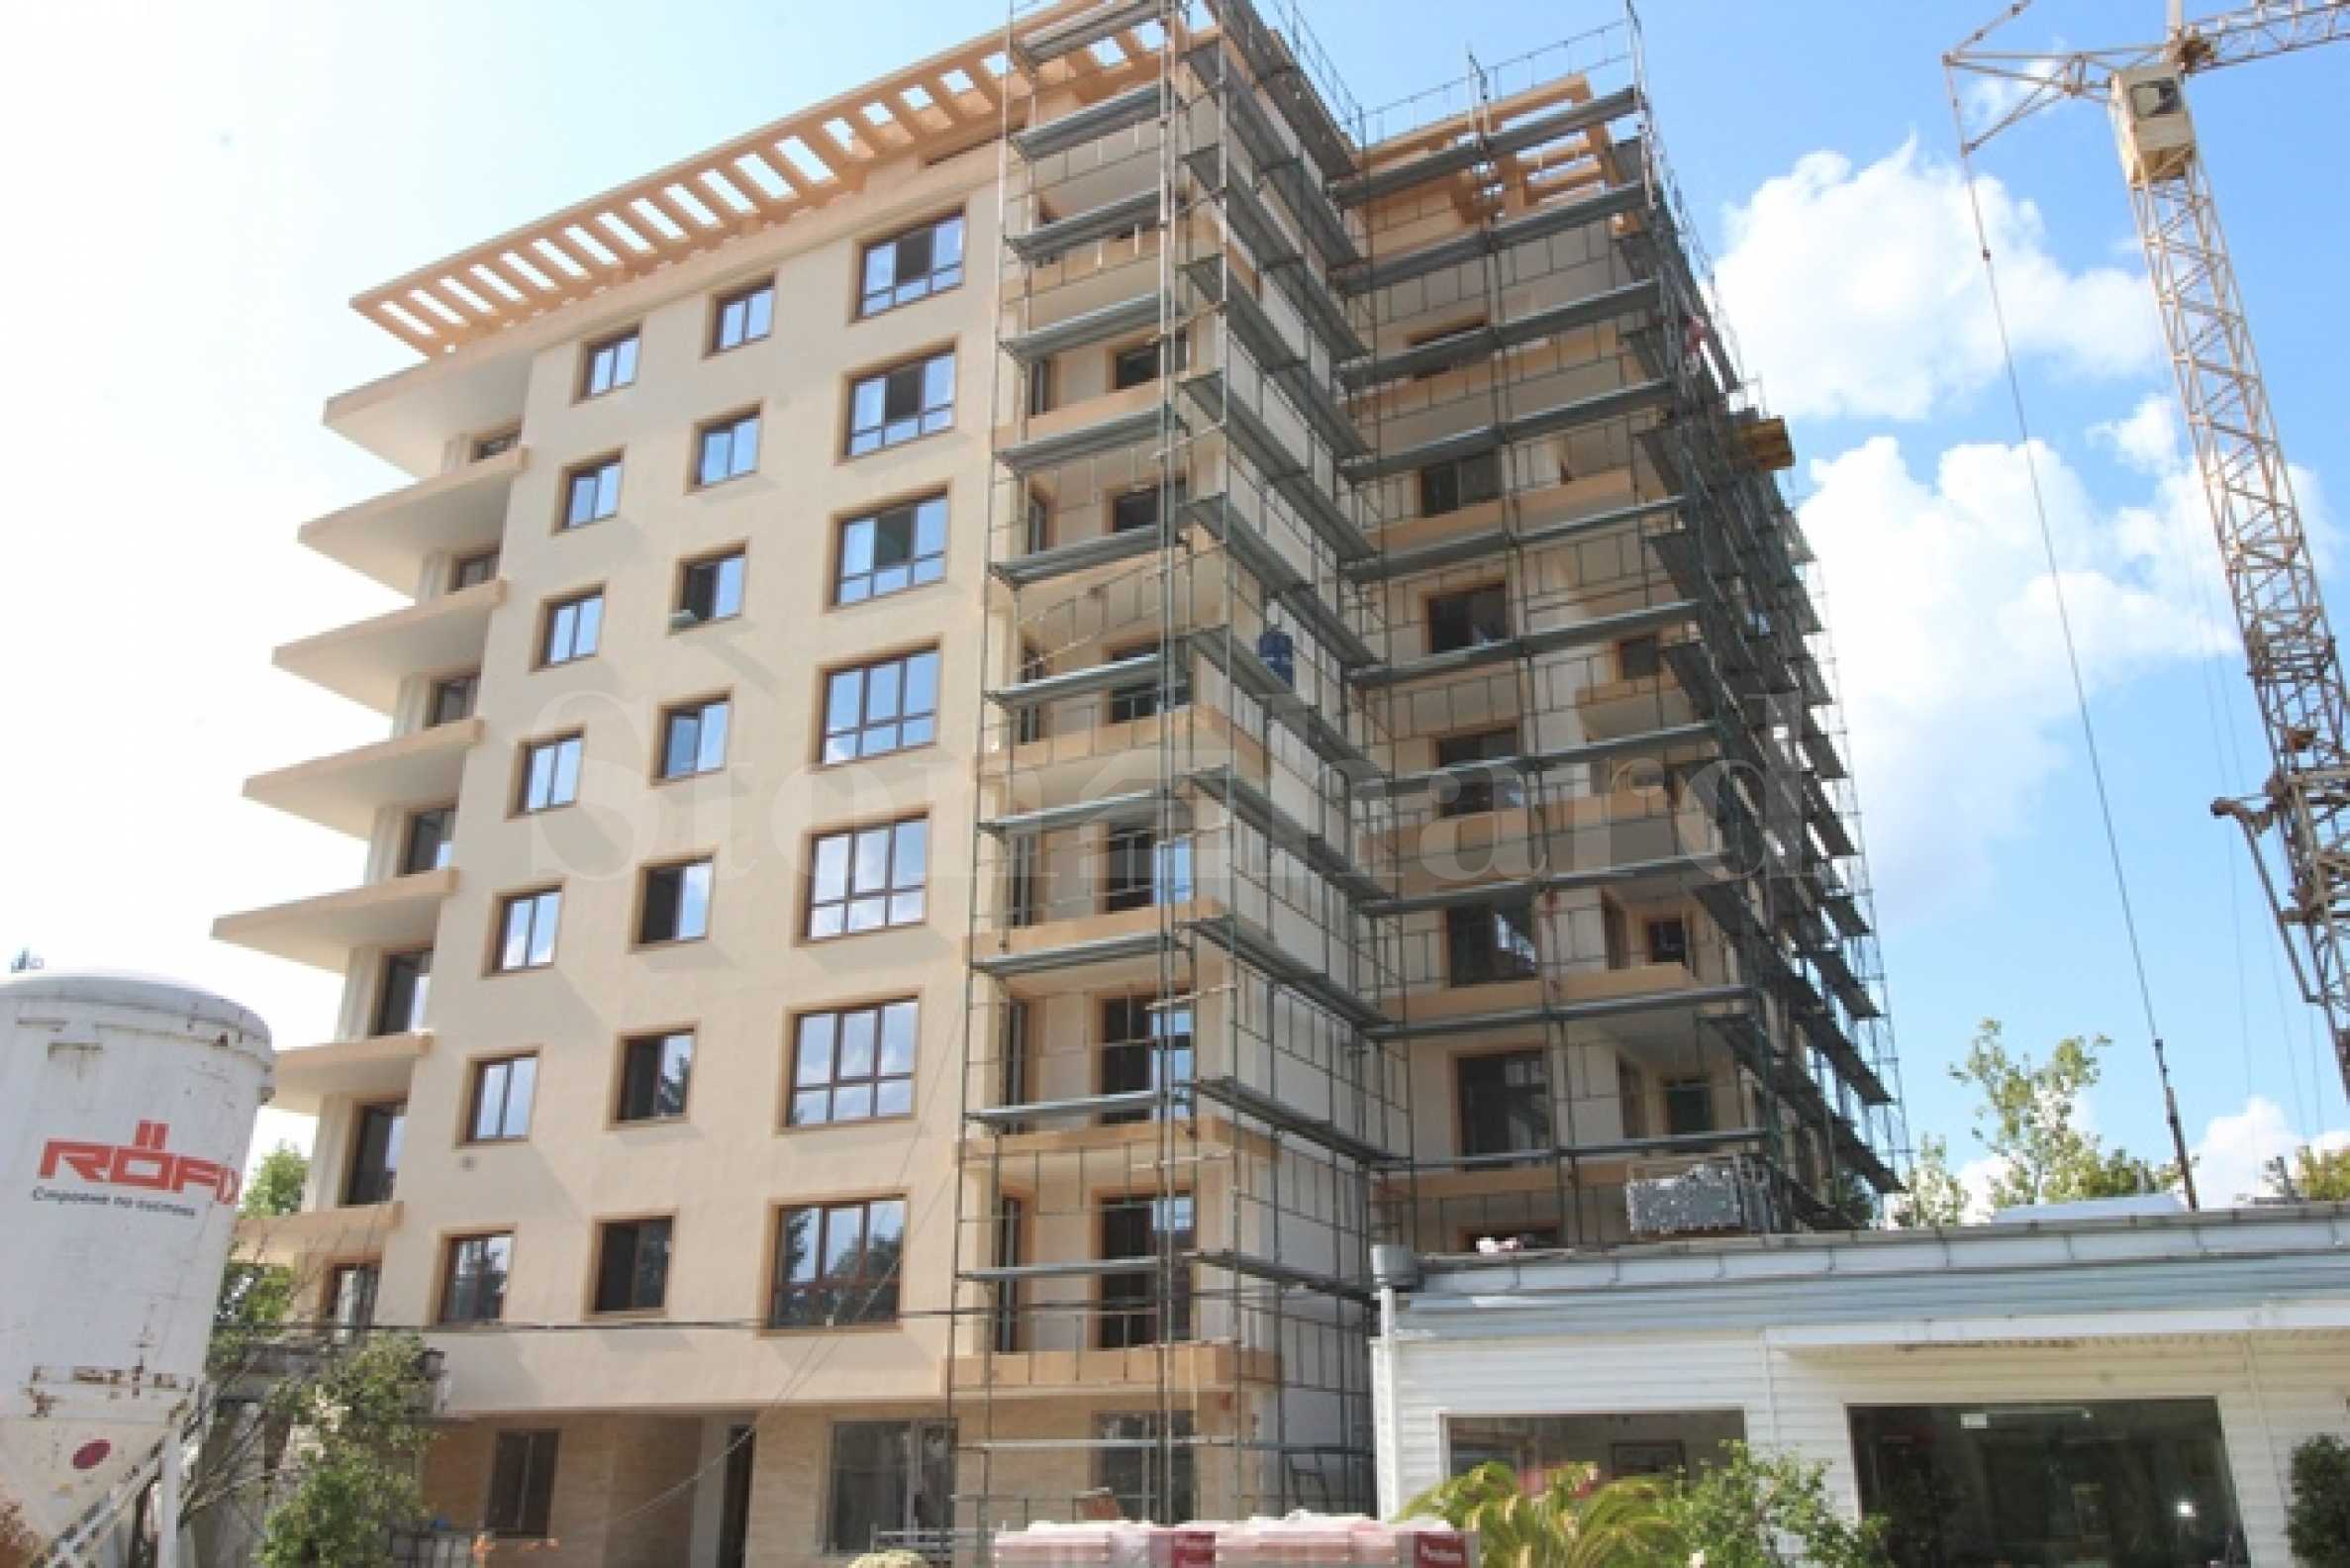 Apartment in Veliko Tarnovo1 - Stonehard